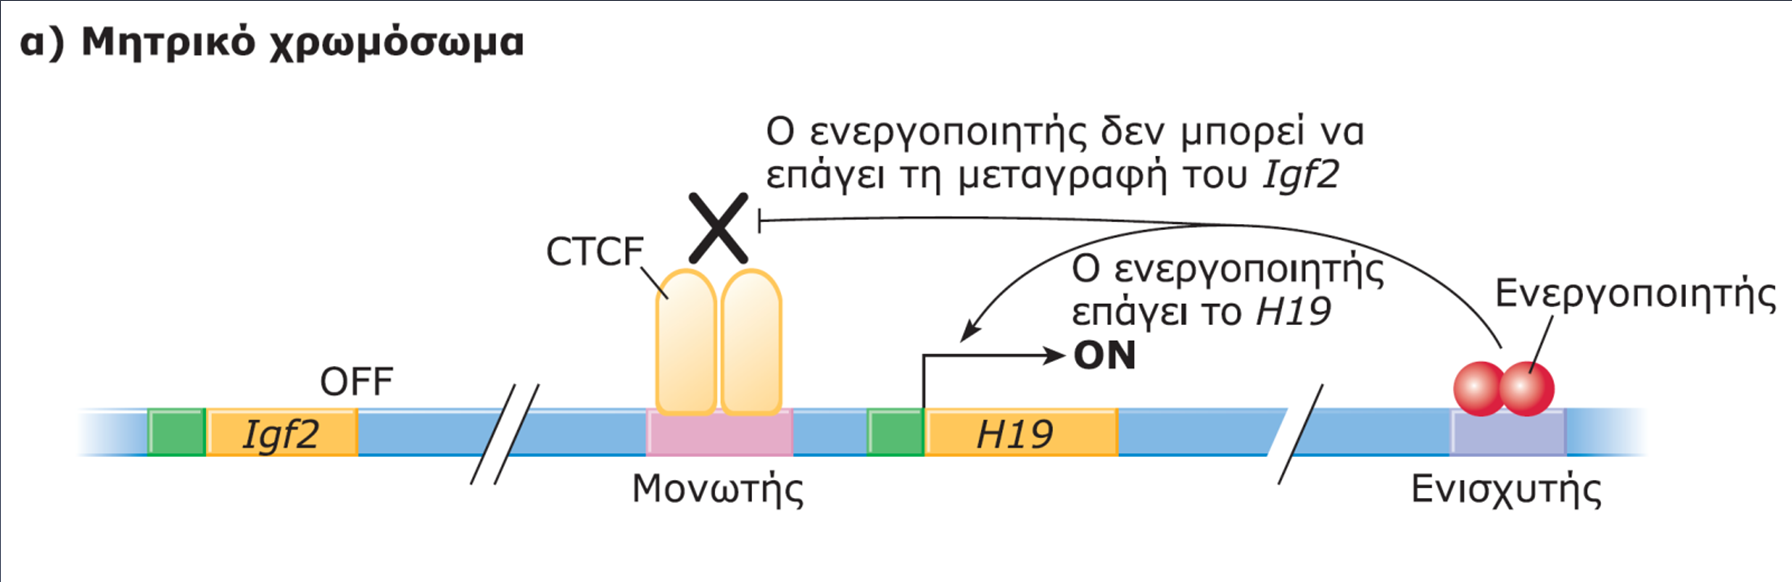 Μοντέλο εντυπώματος των γονιδίων Igf2 και